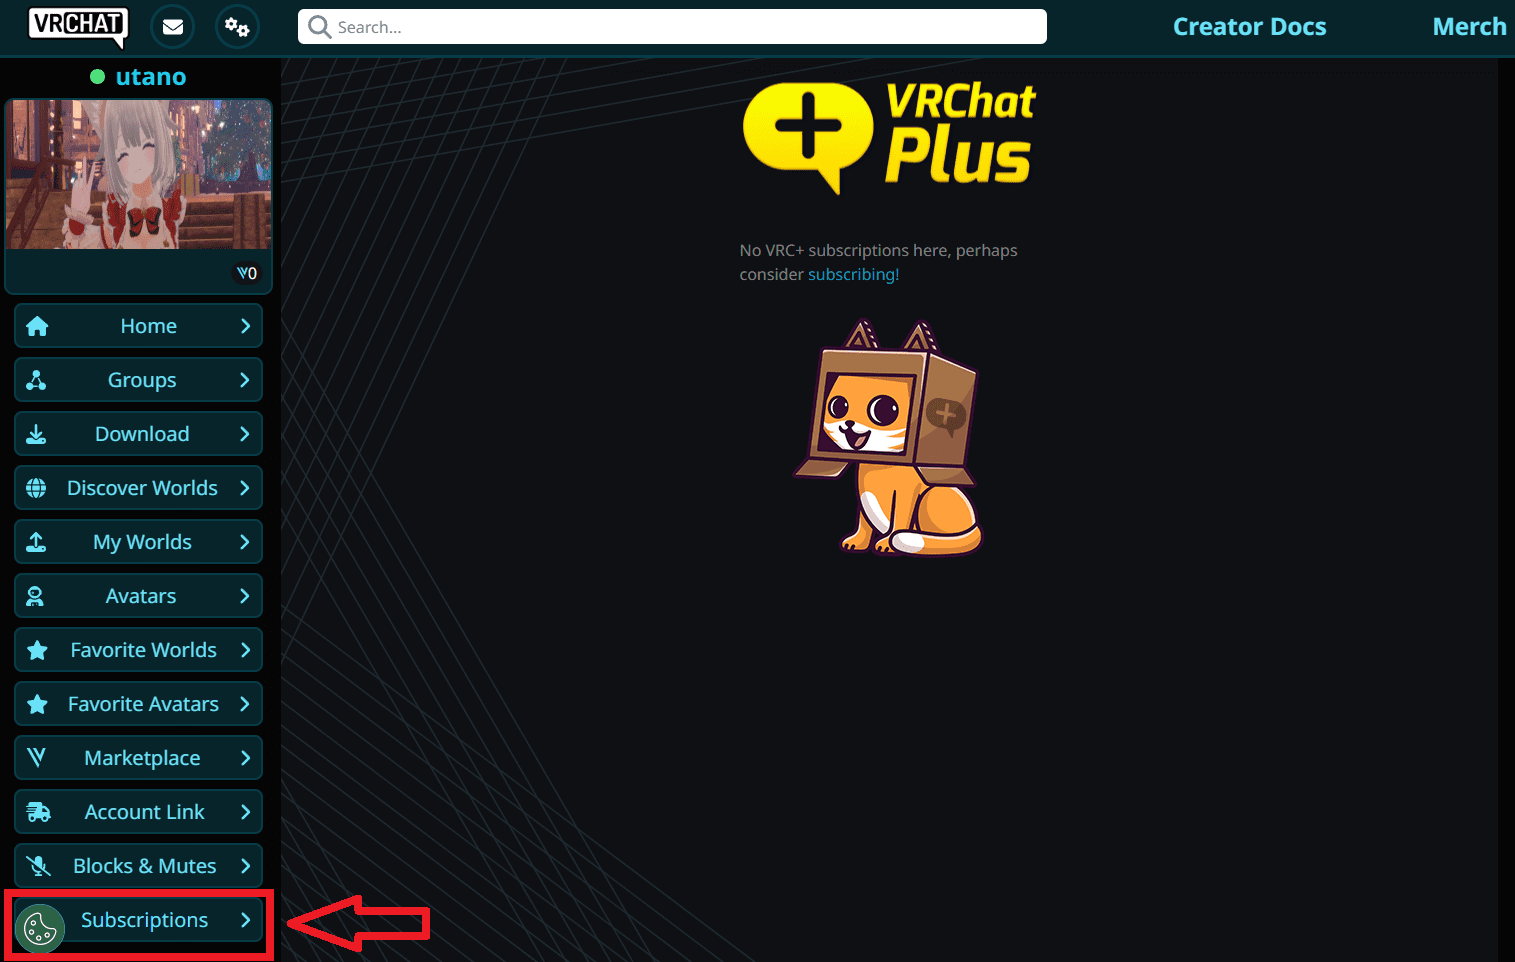 VRChat Plus